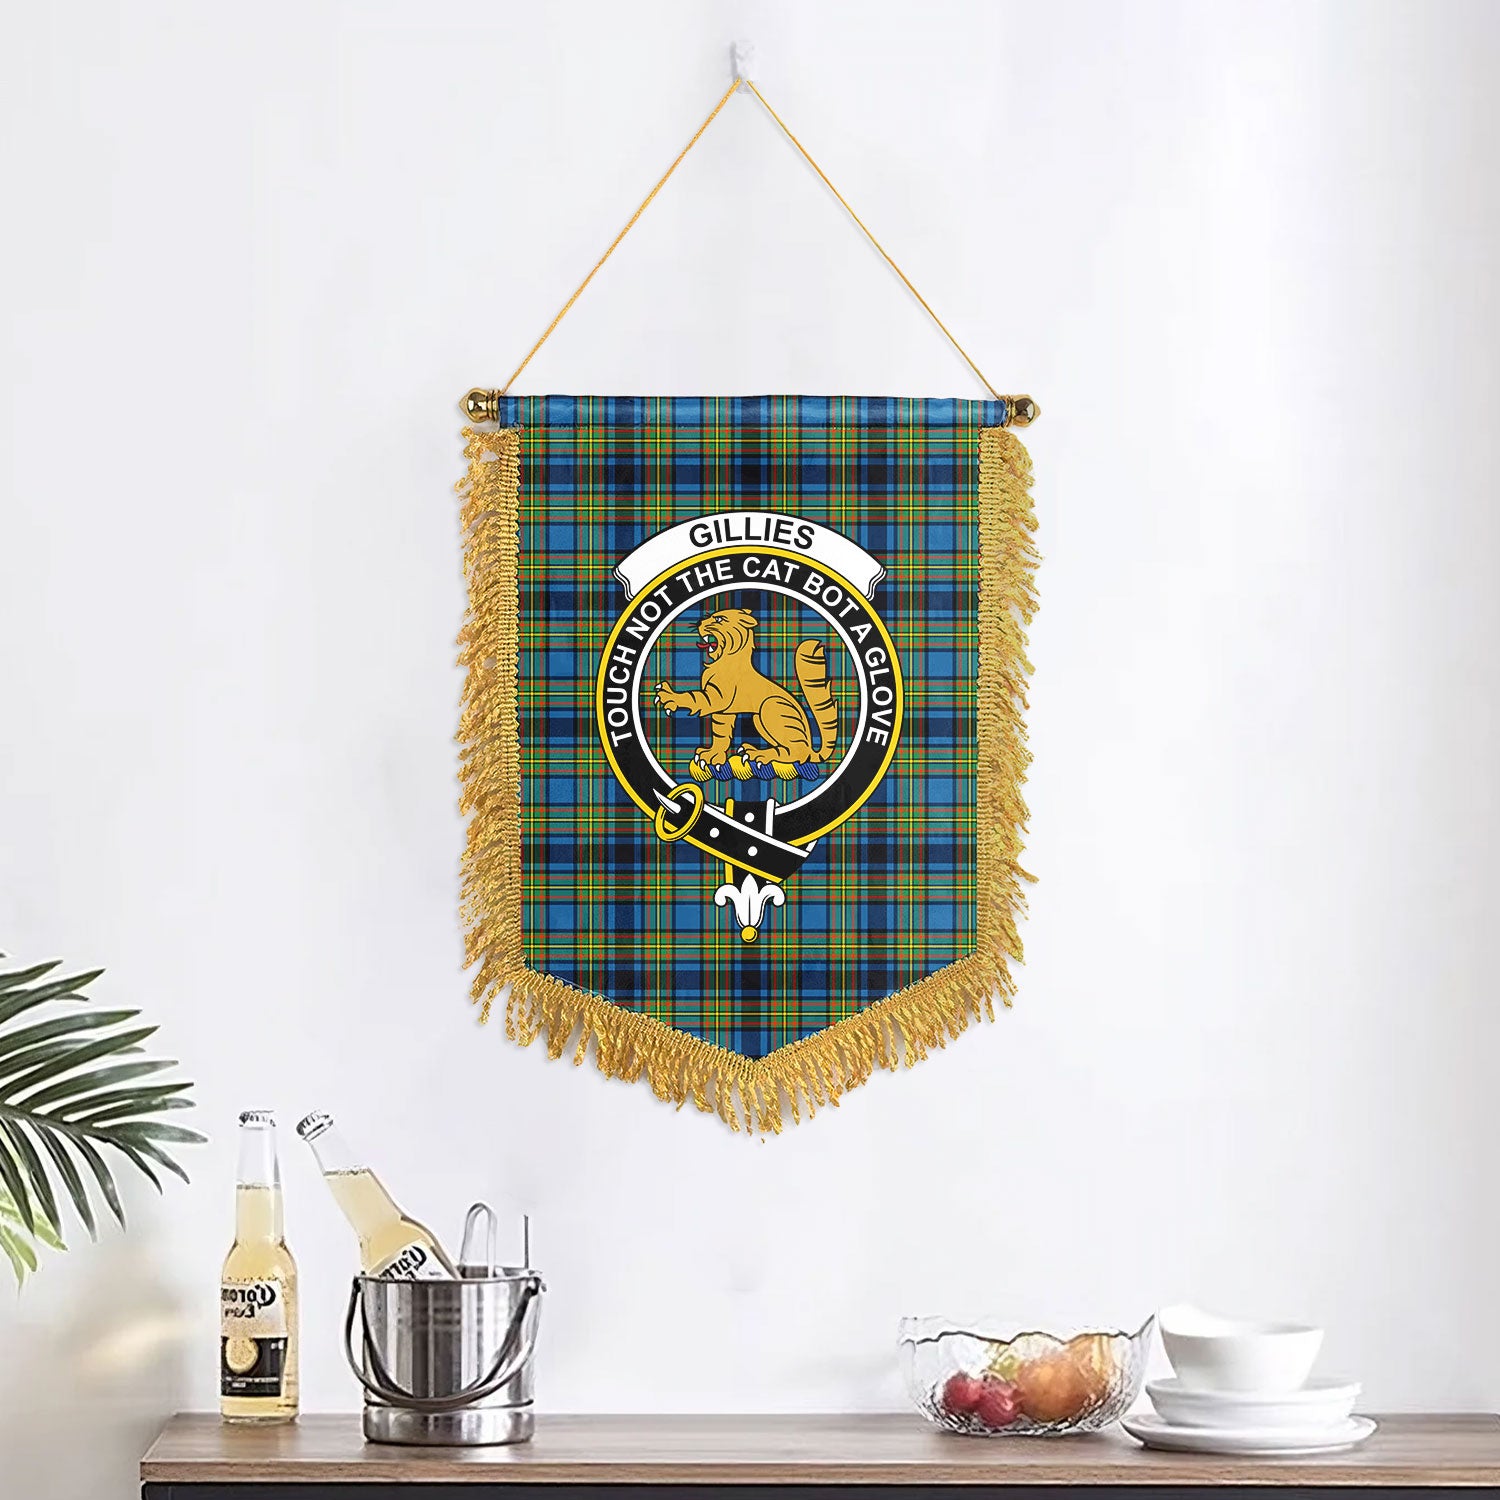 Gillies Ancient Tartan Crest Wall Hanging Banner